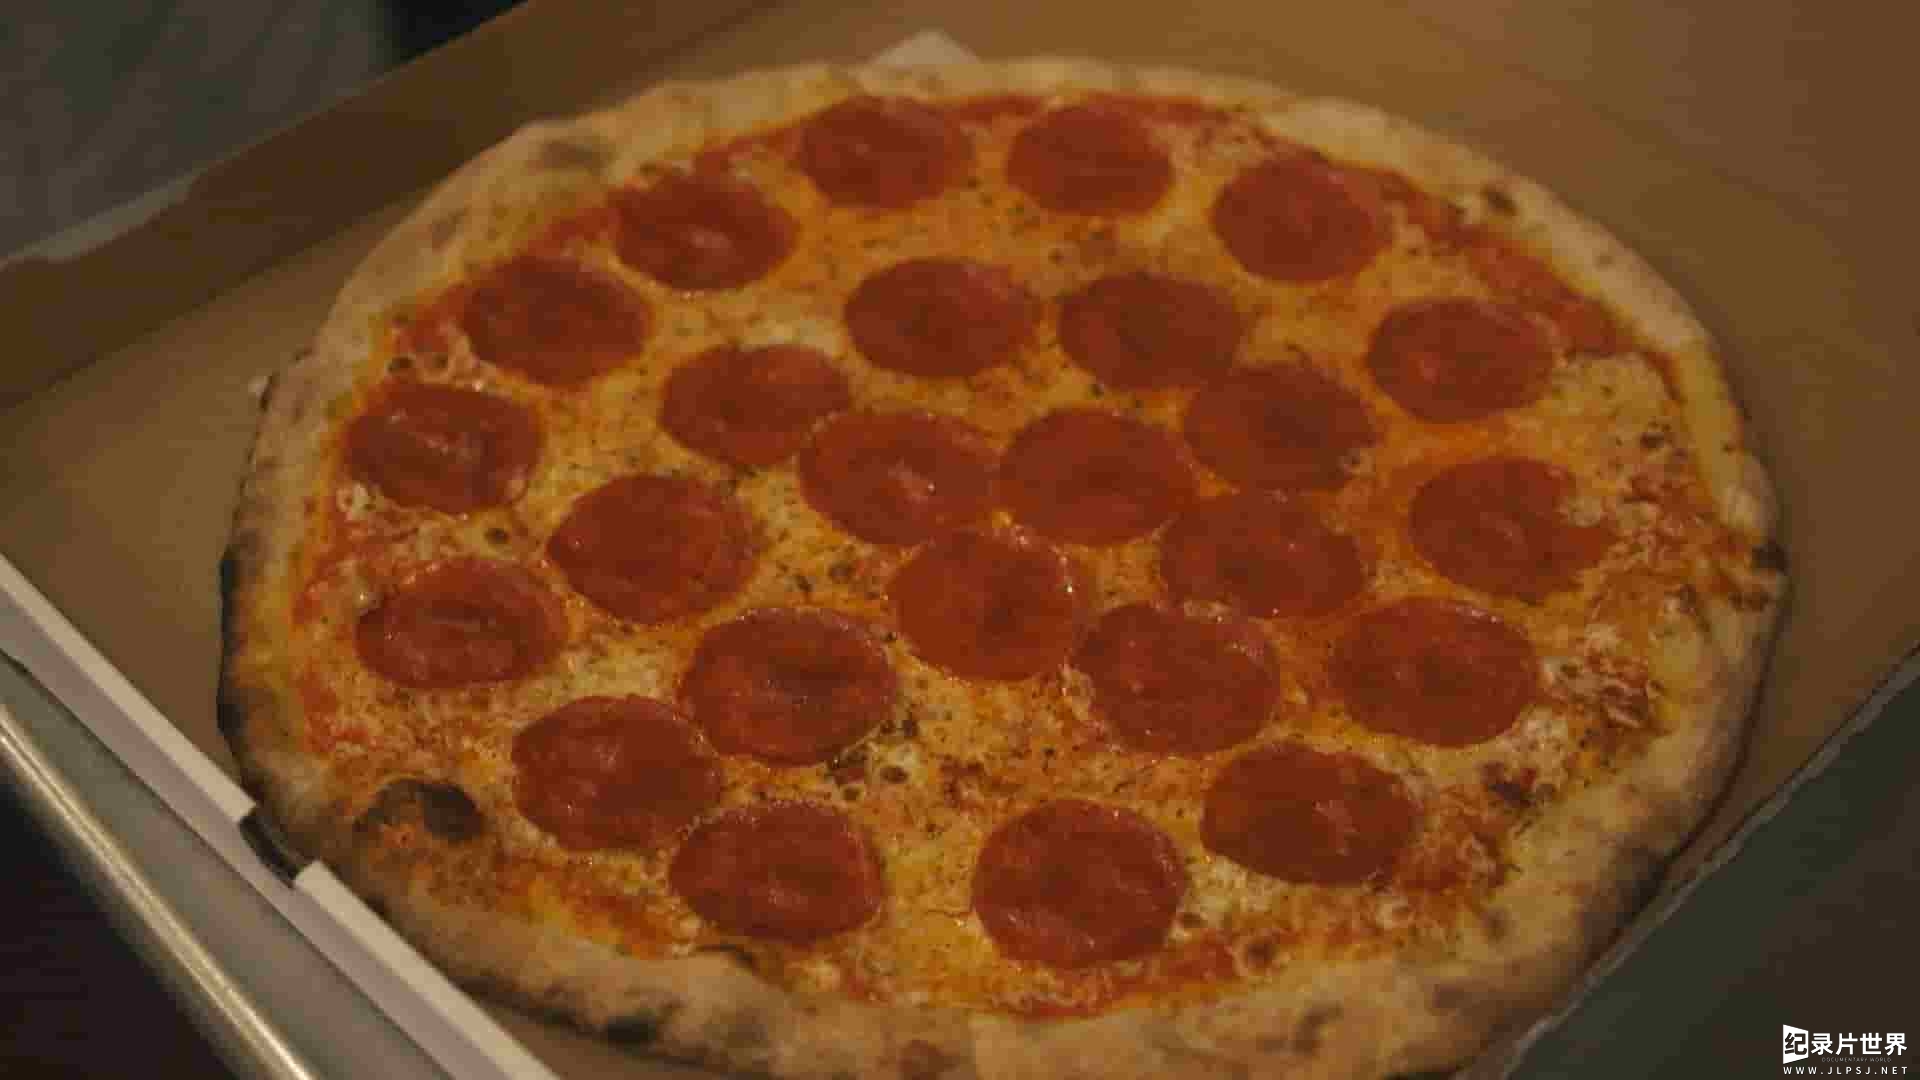 美国纪录片《披萨秀 The Pizza Show》第1-2季全16集